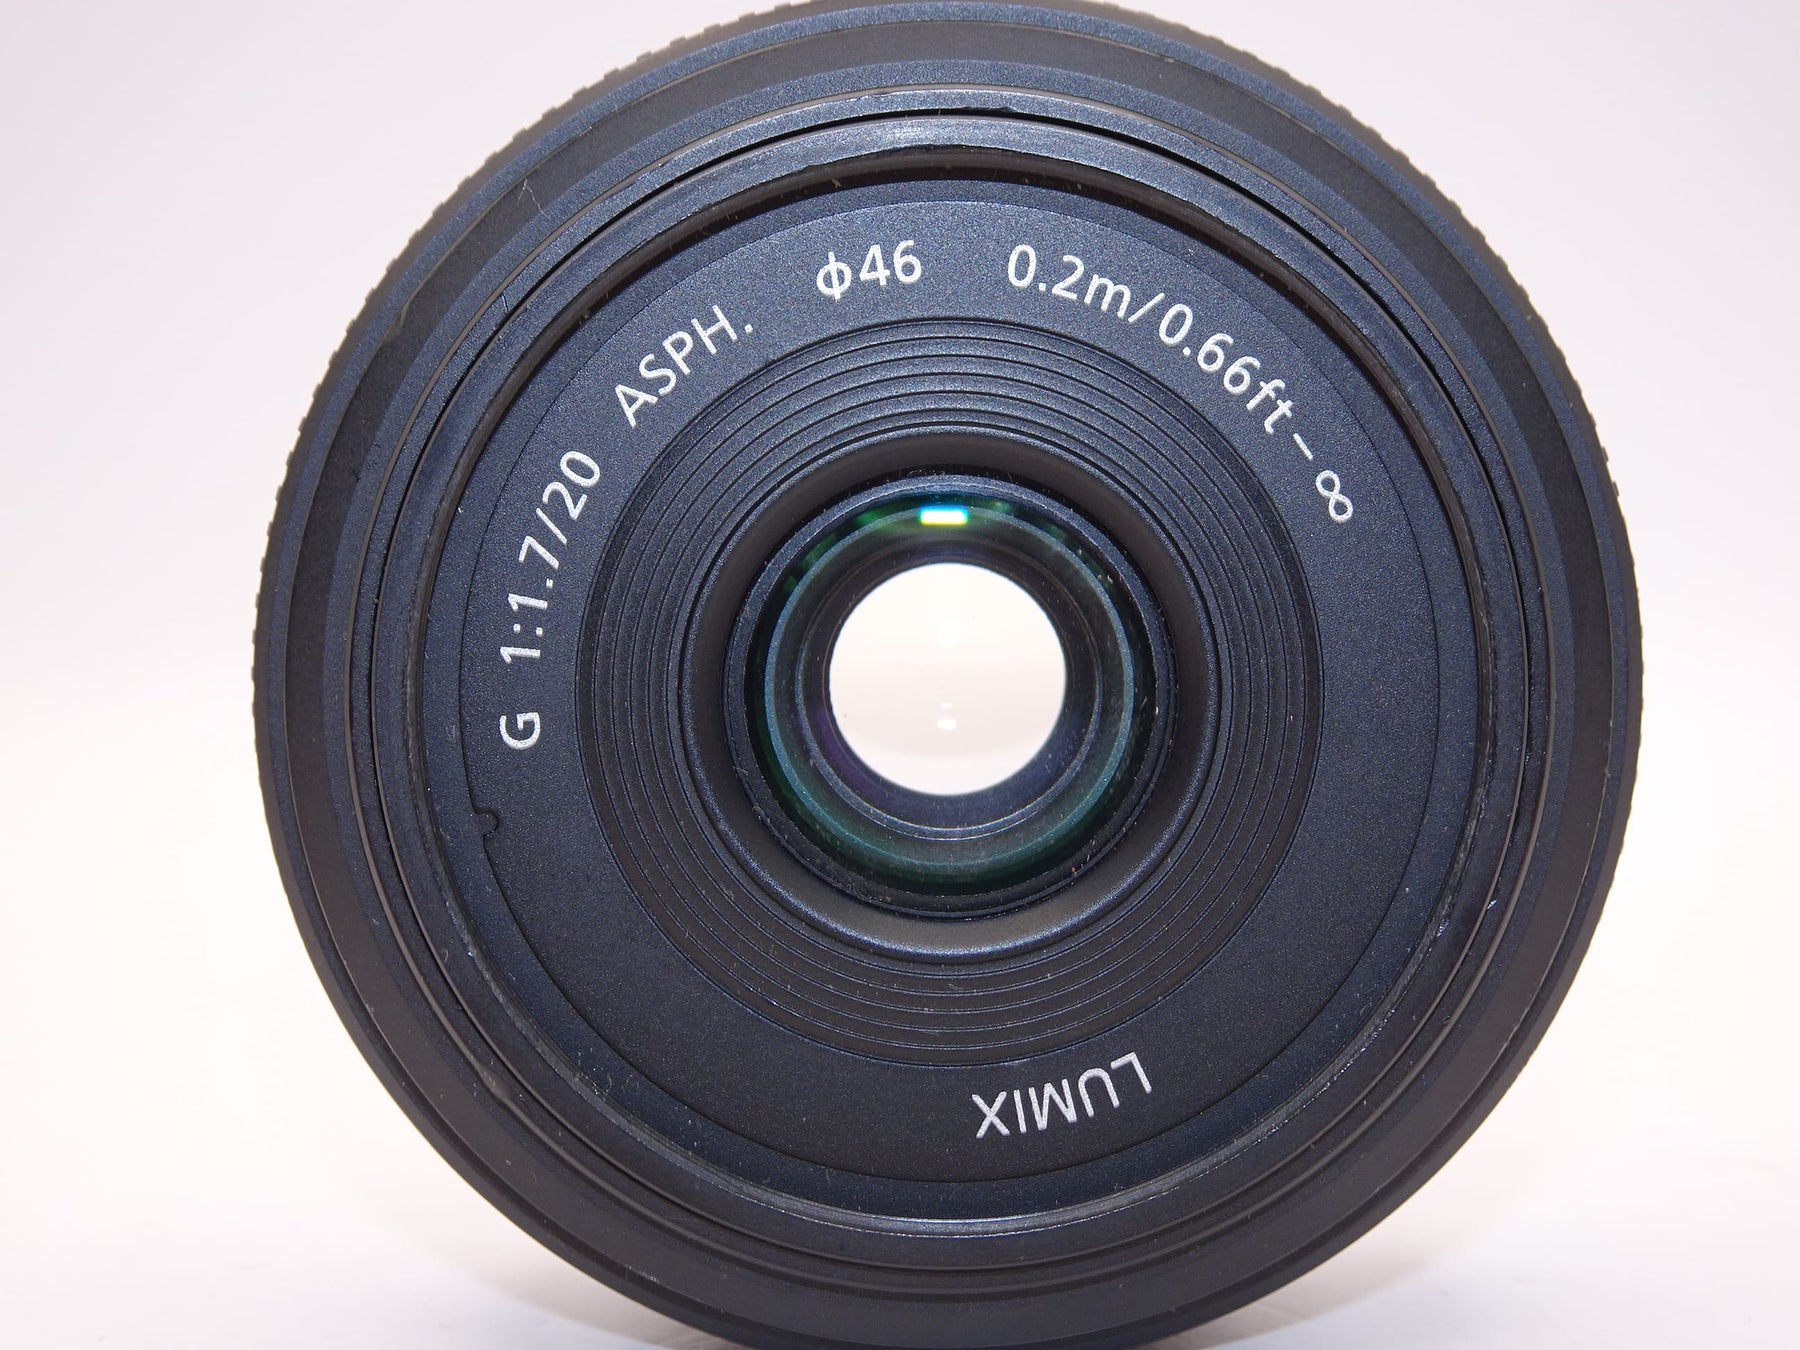 【外観特上級】パナソニック ルミックス G 20mm/F1.7 ASPH. H-H020